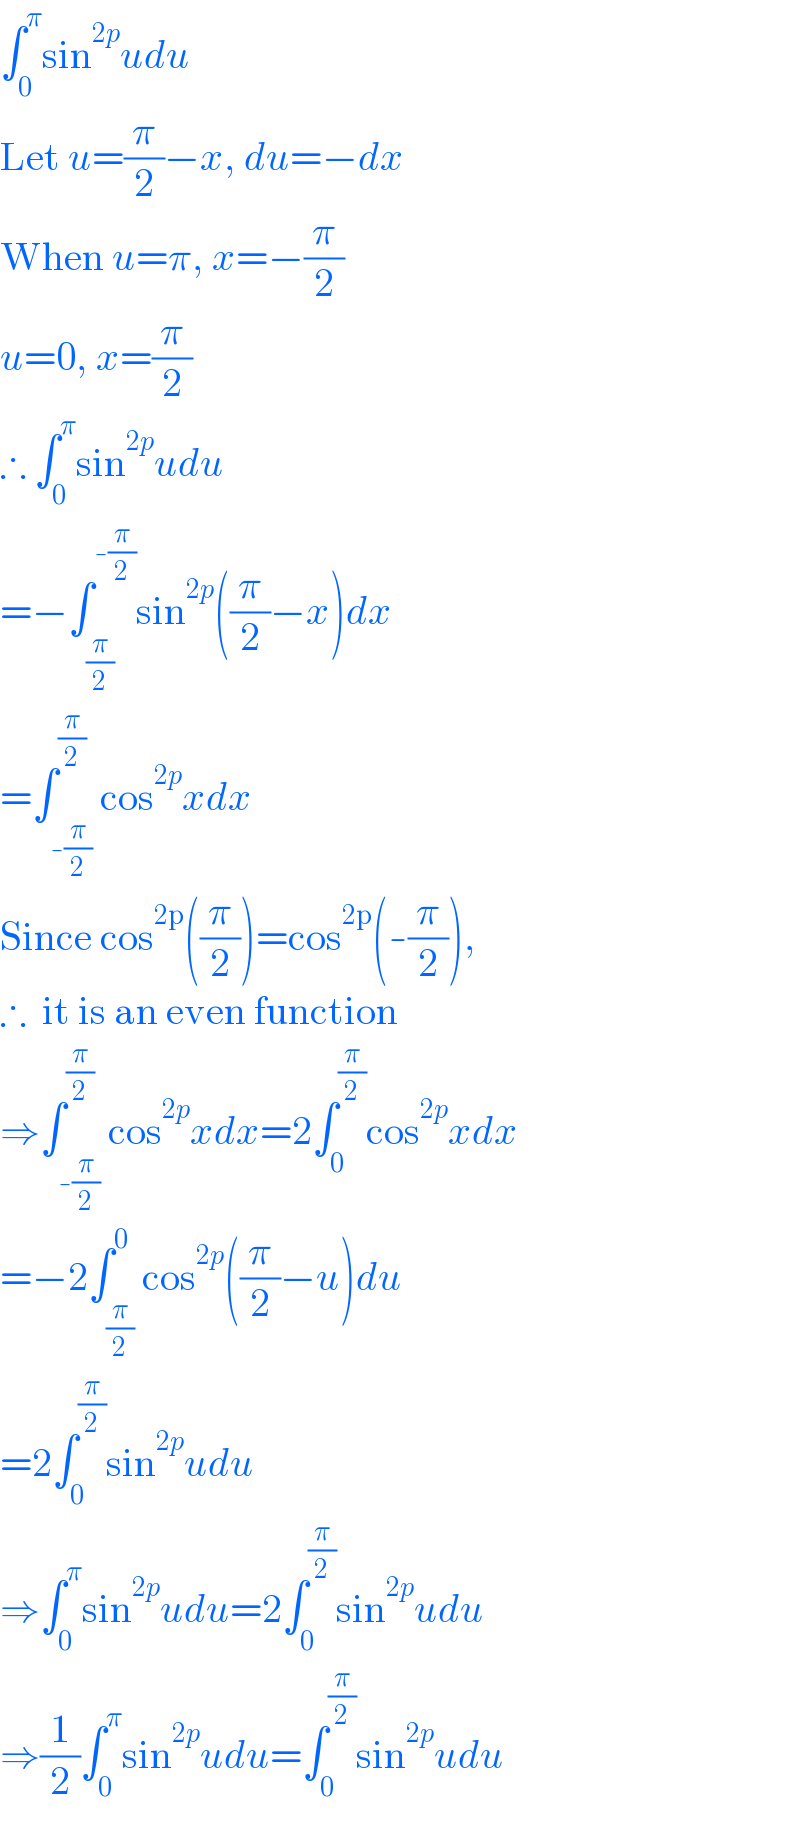 ∫_0 ^π sin^(2p) udu  Let u=(π/2)−x, du=−dx  When u=π, x=−(π/2)  u=0, x=(π/2)  ∴ ∫_0 ^π sin^(2p) udu  =−∫_(π/2) ^(-(π/2)) sin^(2p) ((π/2)−x)dx  =∫_(-(π/2)) ^(π/2) cos^(2p) xdx  Since cos^(2p) ((π/2))=cos^(2p) (-(π/2)),  ∴  it is an even function  ⇒∫_(-(π/2)) ^(π/2) cos^(2p) xdx=2∫_0 ^(π/2) cos^(2p) xdx  =−2∫_(π/2) ^0 cos^(2p) ((π/2)−u)du  =2∫_0 ^(π/2) sin^(2p) udu  ⇒∫_0 ^π sin^(2p) udu=2∫_0 ^(π/2) sin^(2p) udu  ⇒(1/2)∫_0 ^π sin^(2p) udu=∫_0 ^(π/2) sin^(2p) udu  